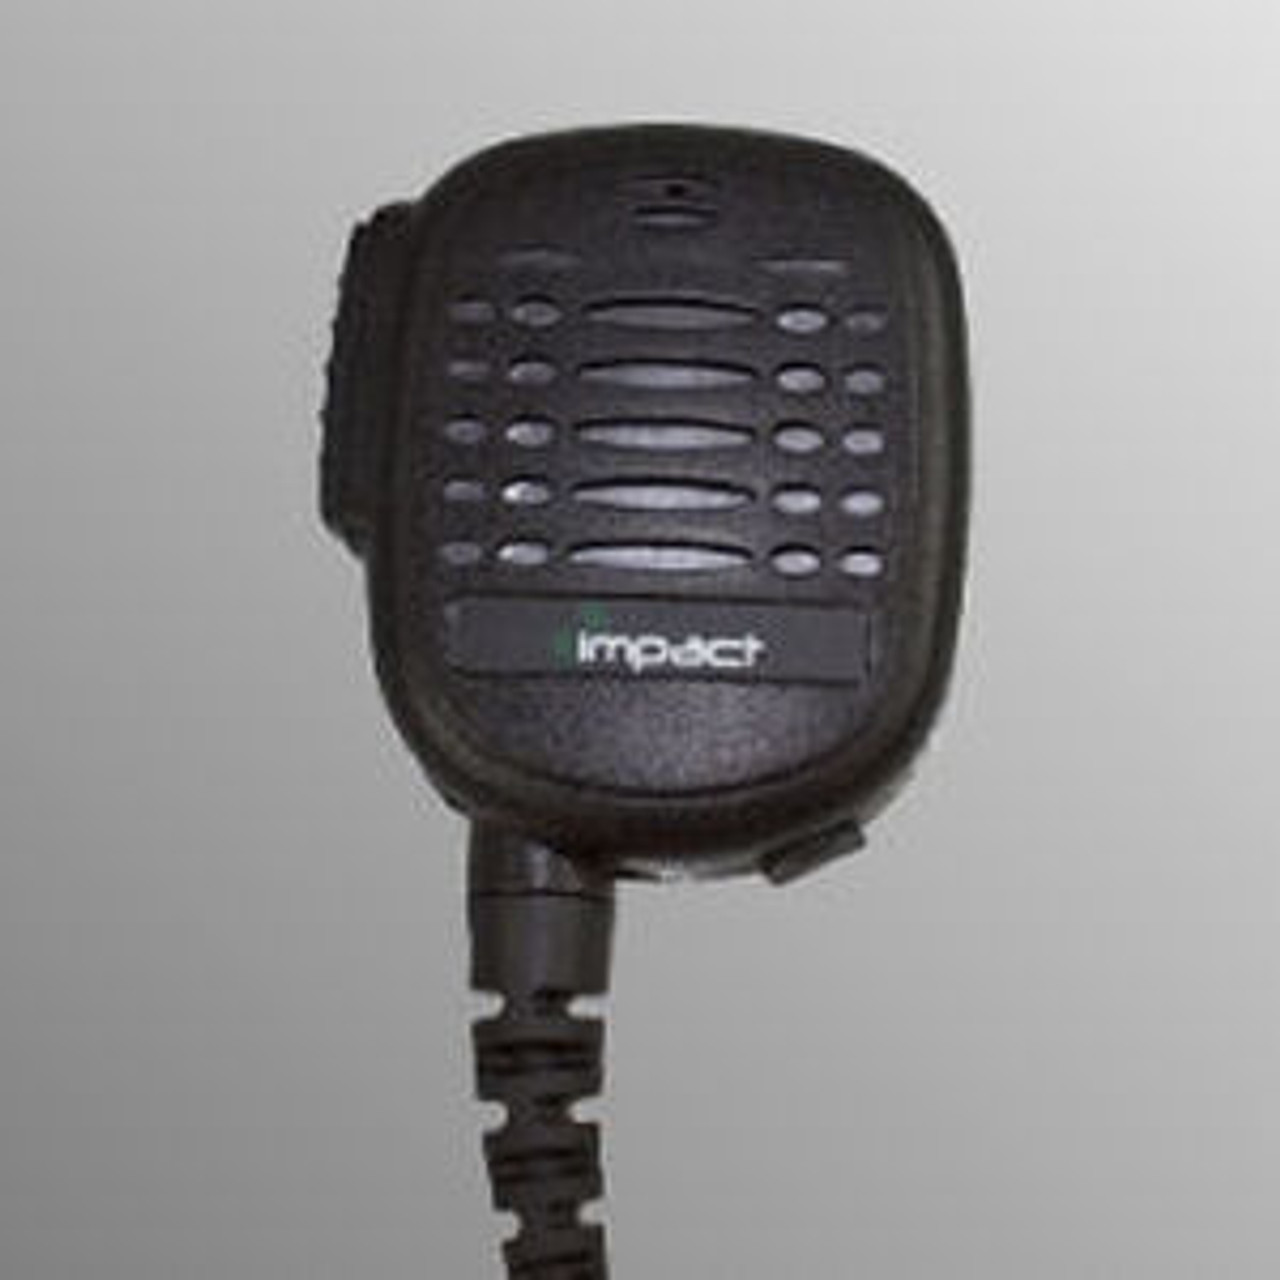 Vertex Standard VX-350 Noise Canceling Speaker Mic.